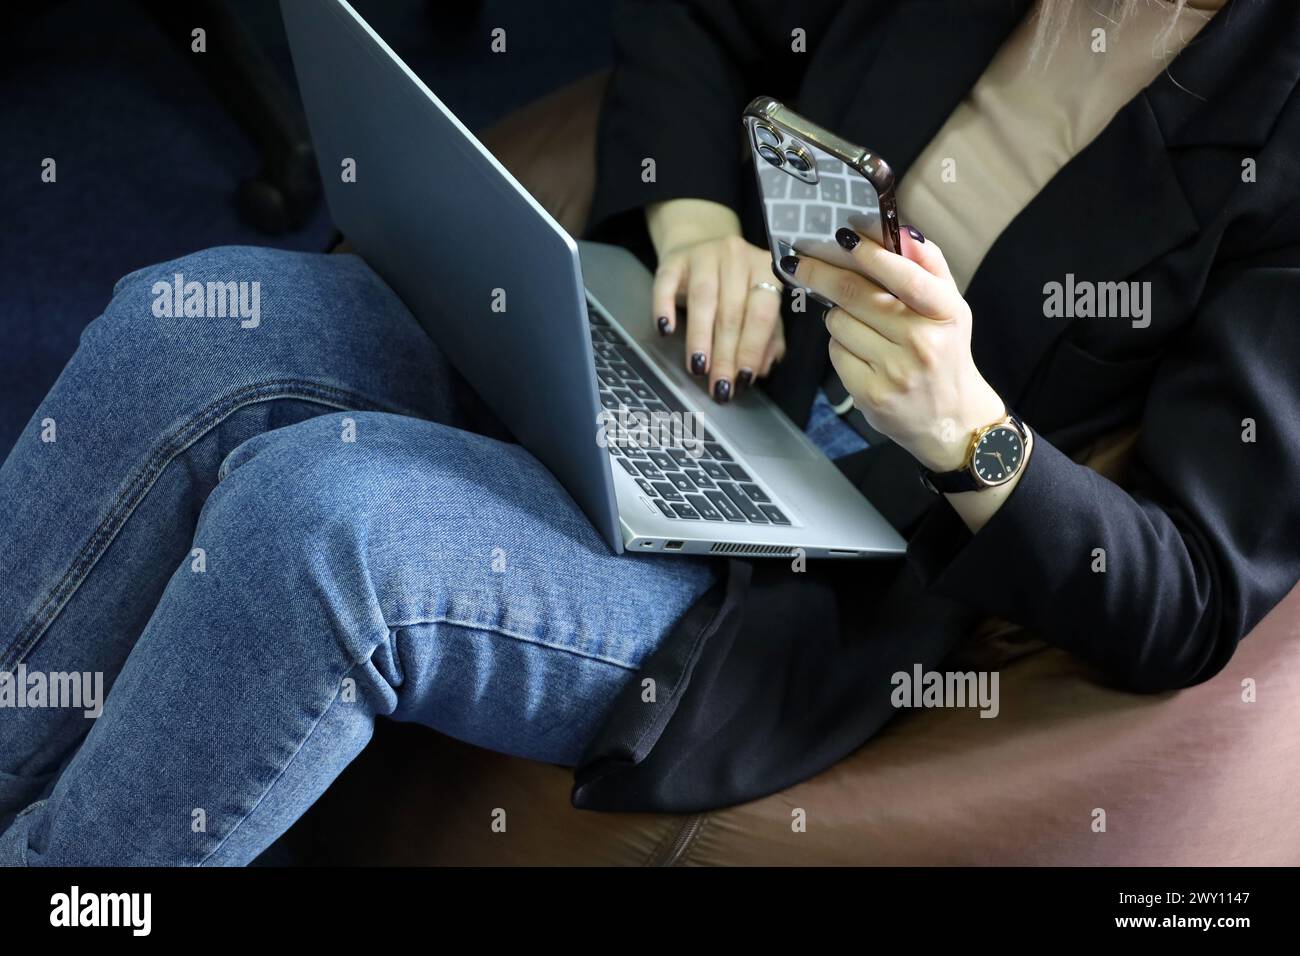 Fille en jeans assis sur un tabouret rembourré avec ordinateur portable sur ses genoux et smartphone. Travail confortable au bureau Banque D'Images